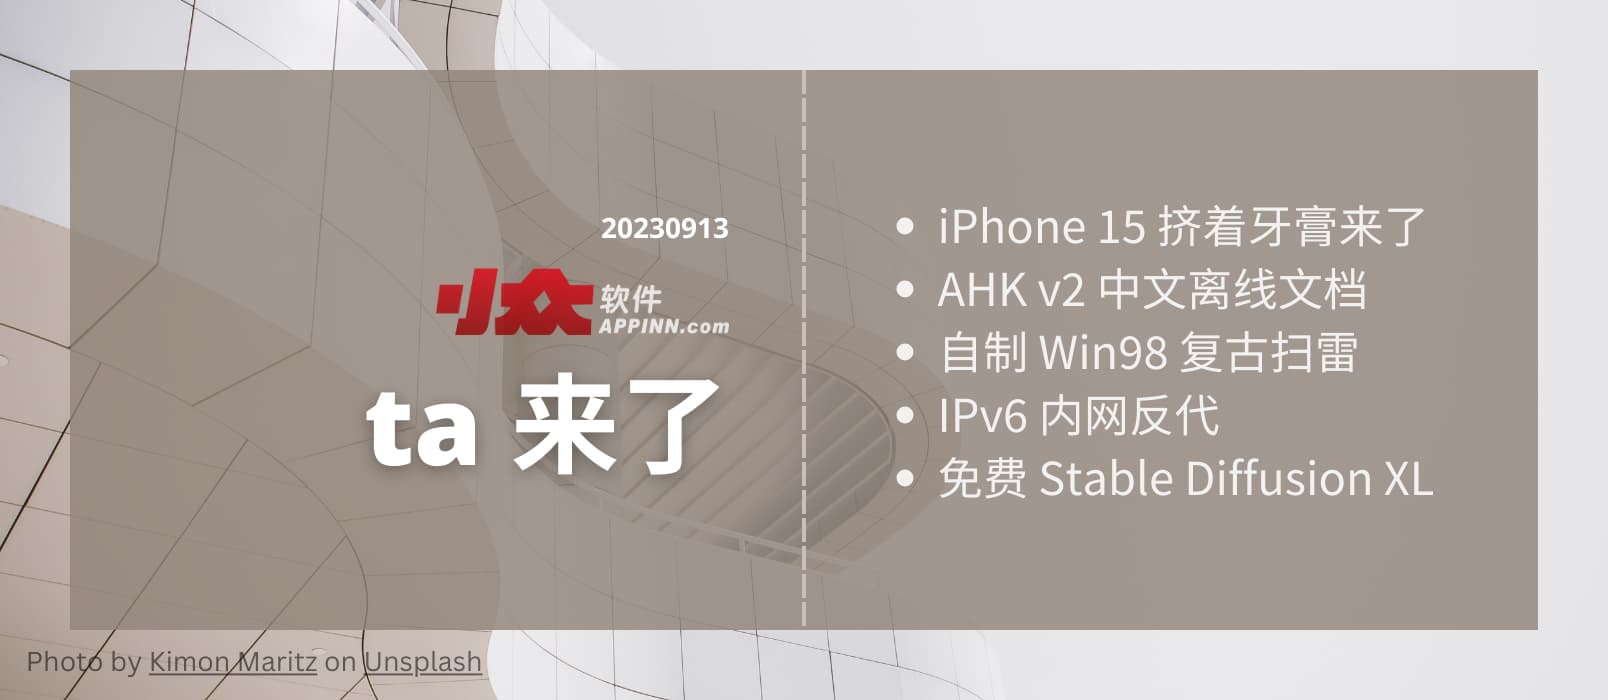 ta 来了2：iPhone 15 挤着牙膏来了、AHK v2 中文离线文档、自制 Win98 复古扫雷、IPv6 内网反代、免费 Stable Diffusion XL 1